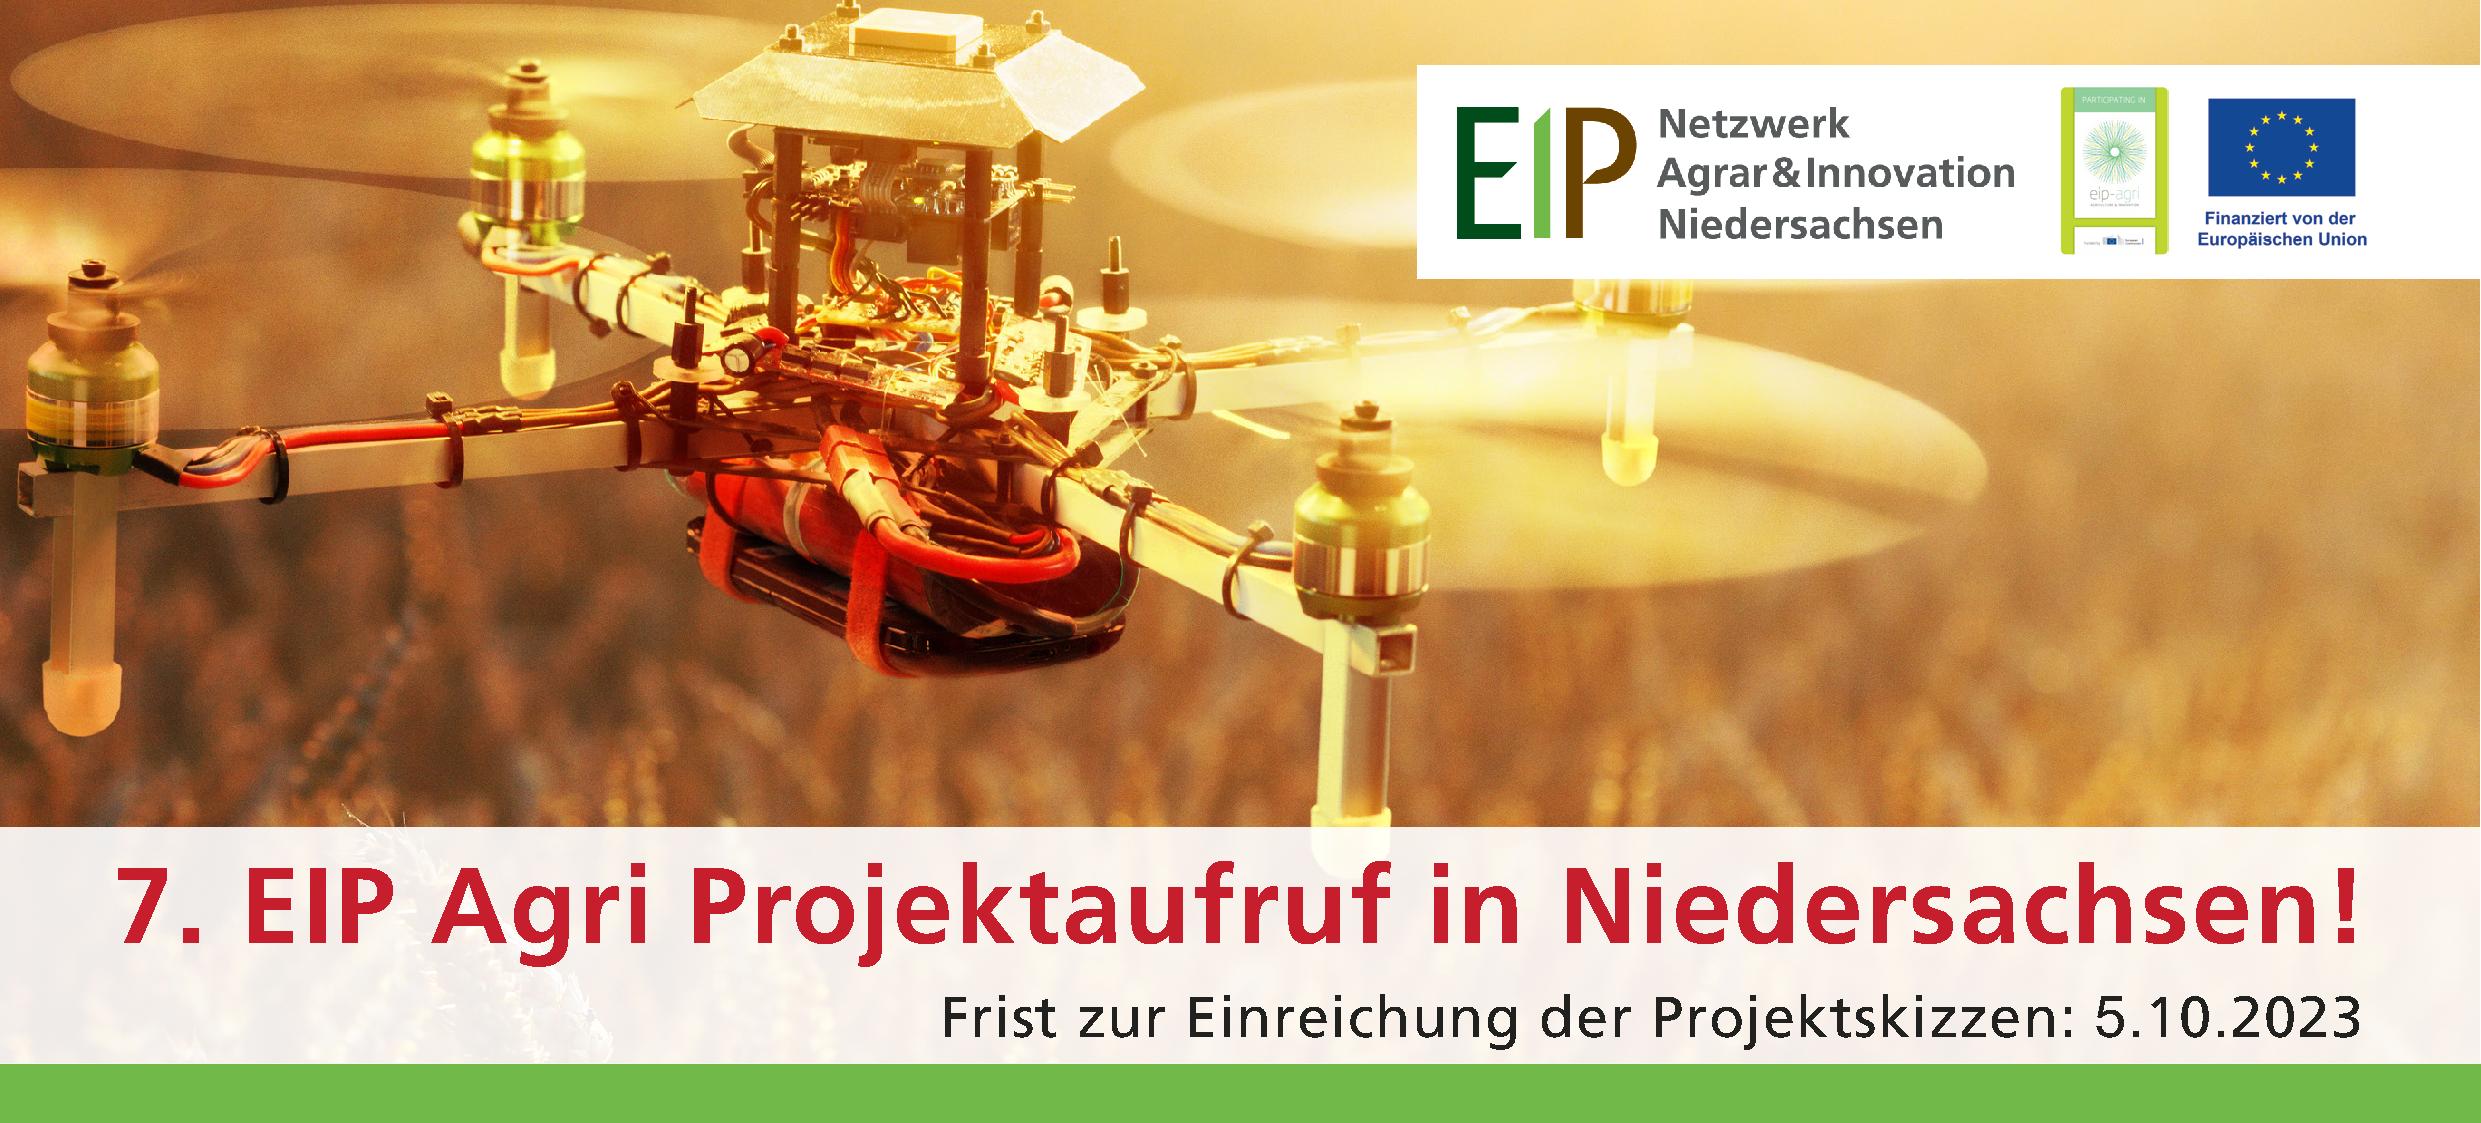 7. Projektaufruf von EIP Agri in Niedersachsen